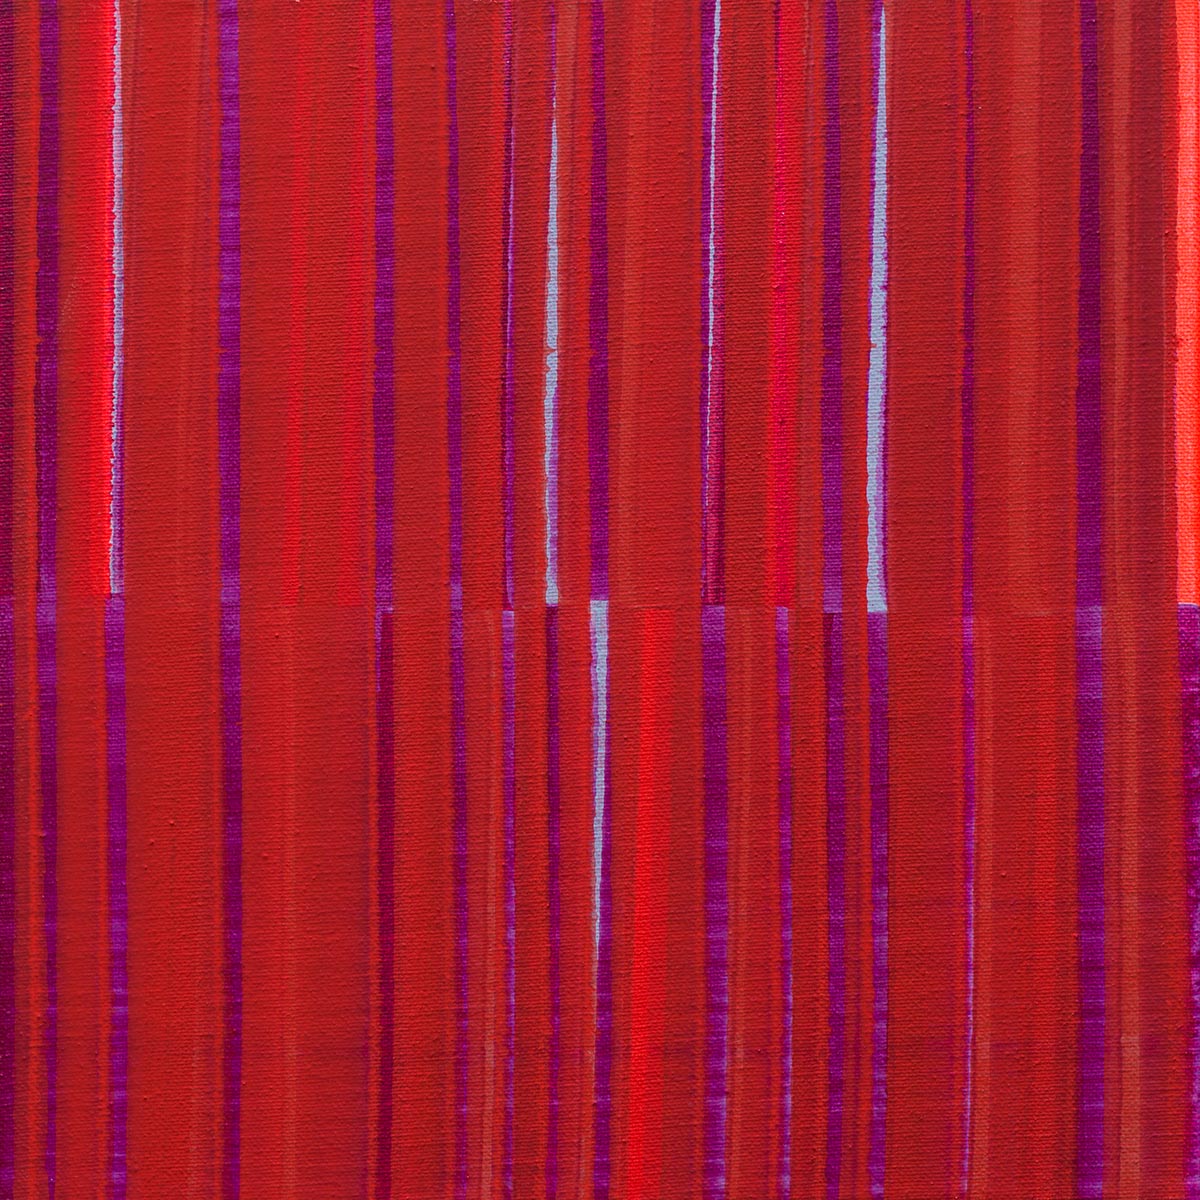 Nikola Dimitrov, Kleine Komposition Rot, 2017, Pigmente, Bindemittel auf Leinwand, 30 × 30 cm